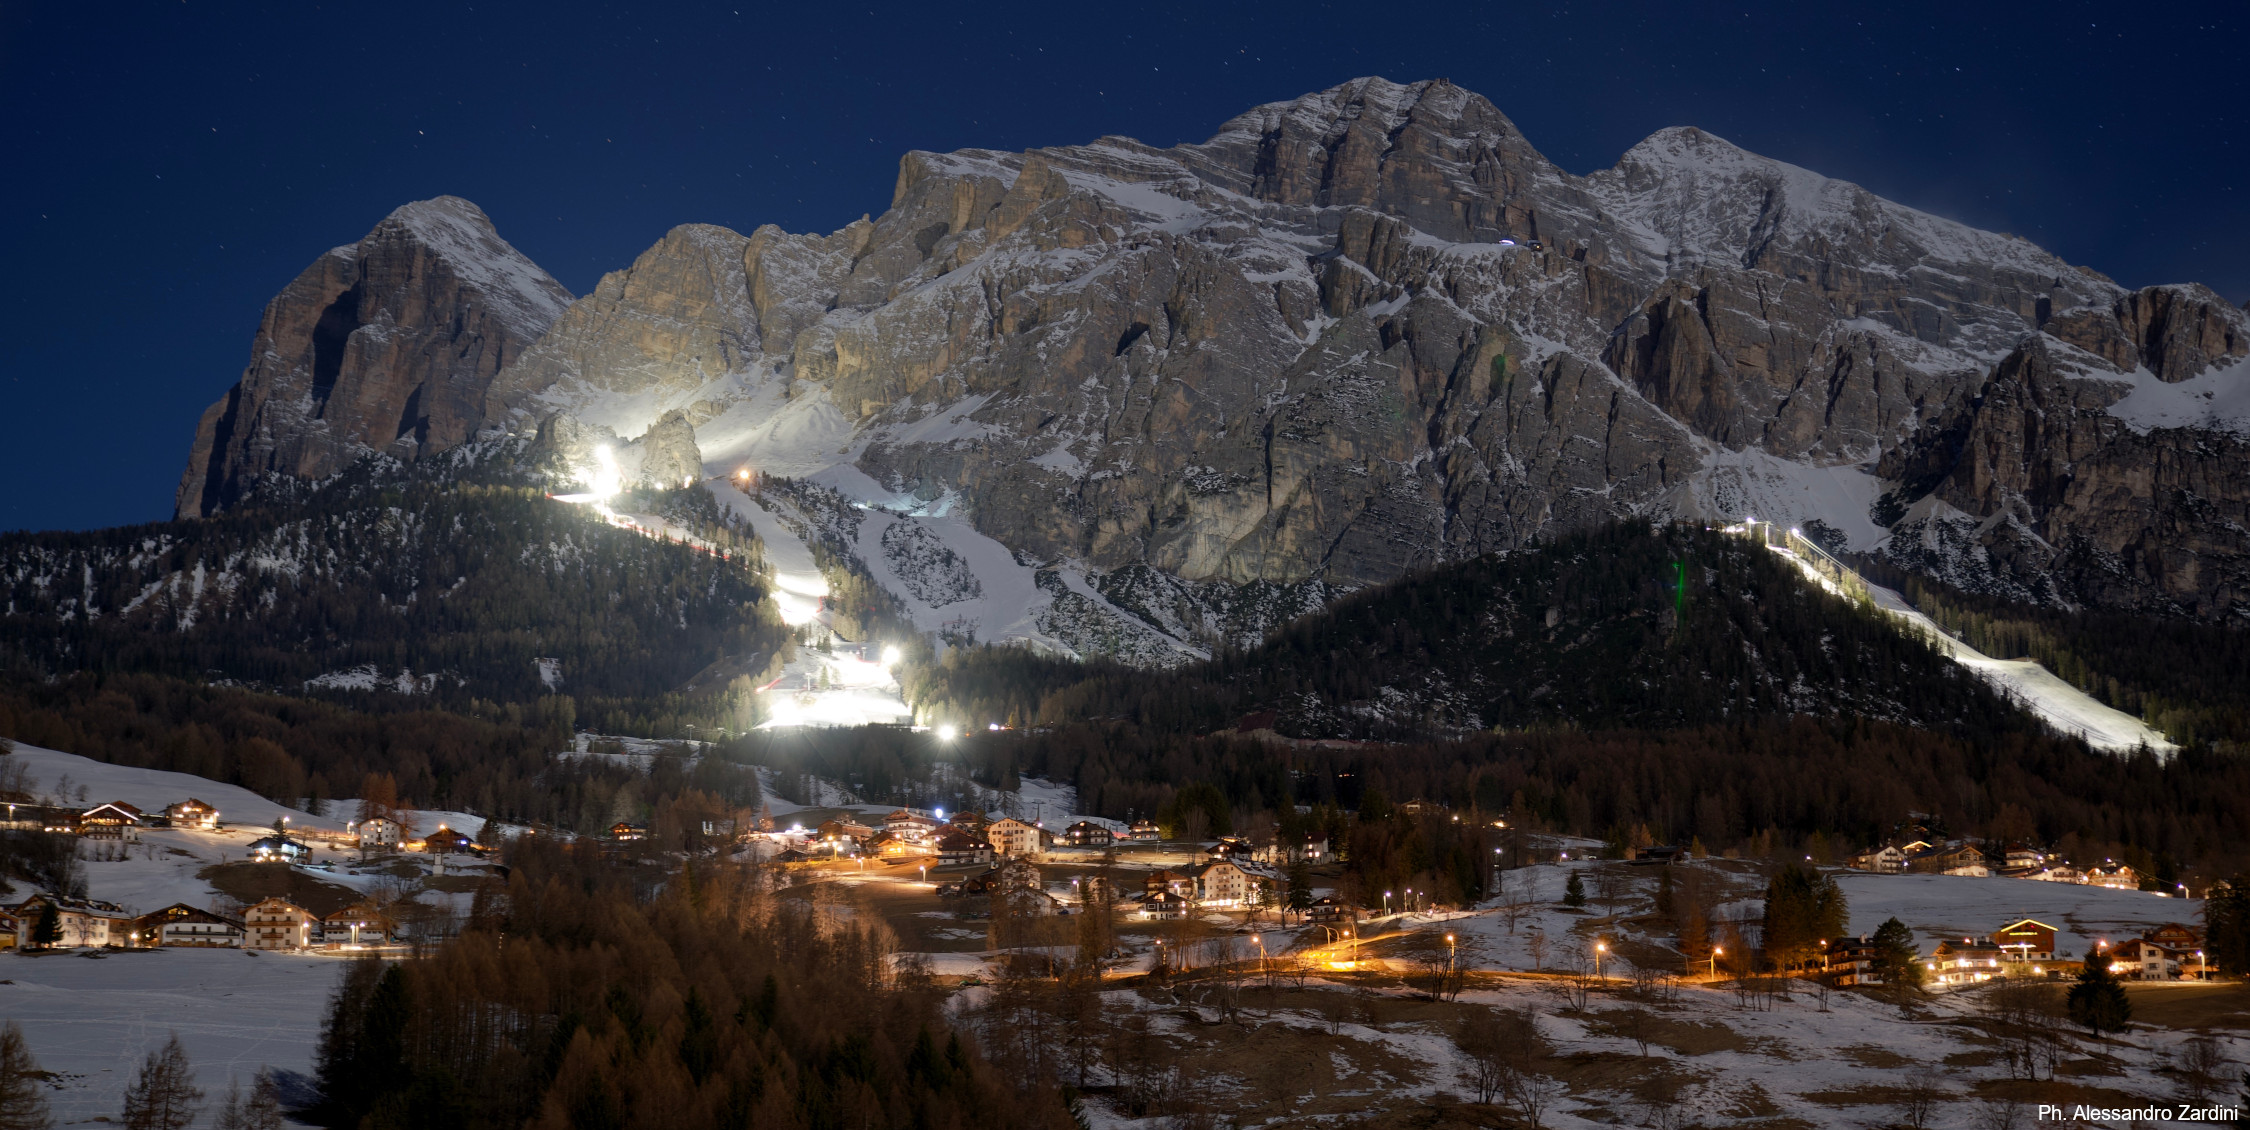 Cortina d'Ampezzo at night